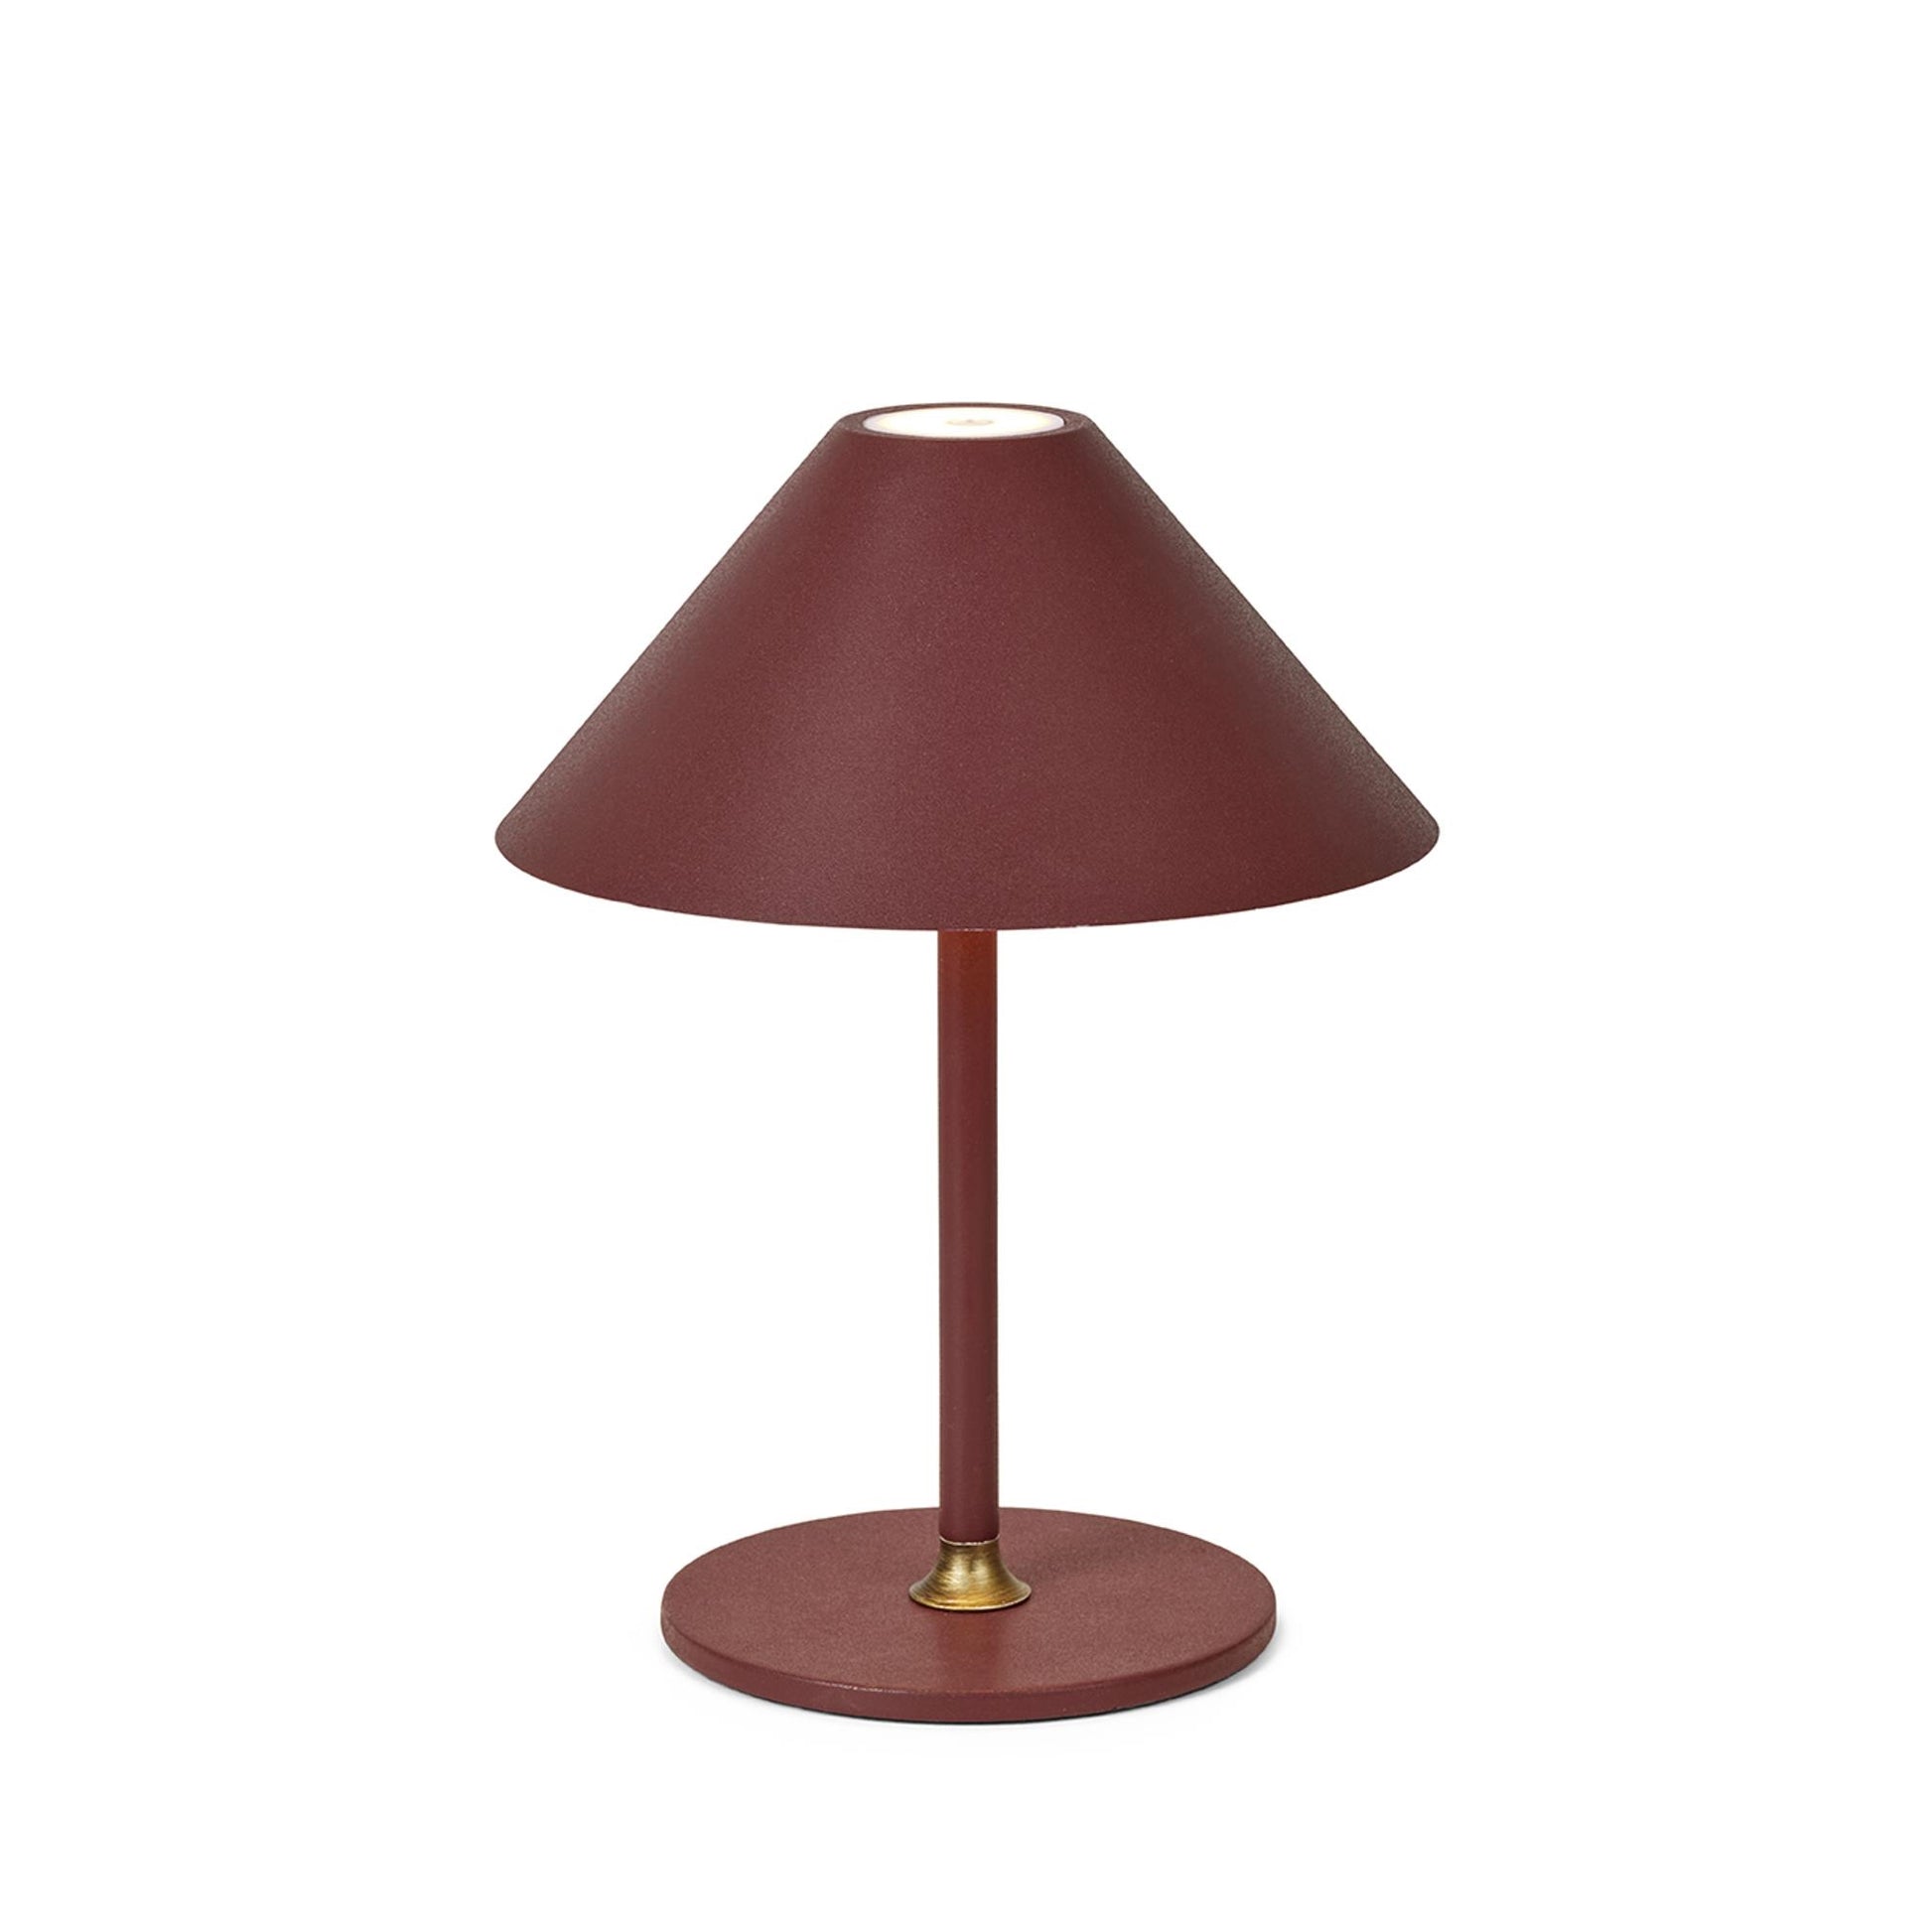 Cozy Portable Lamp by Halo Design #Bordeaux